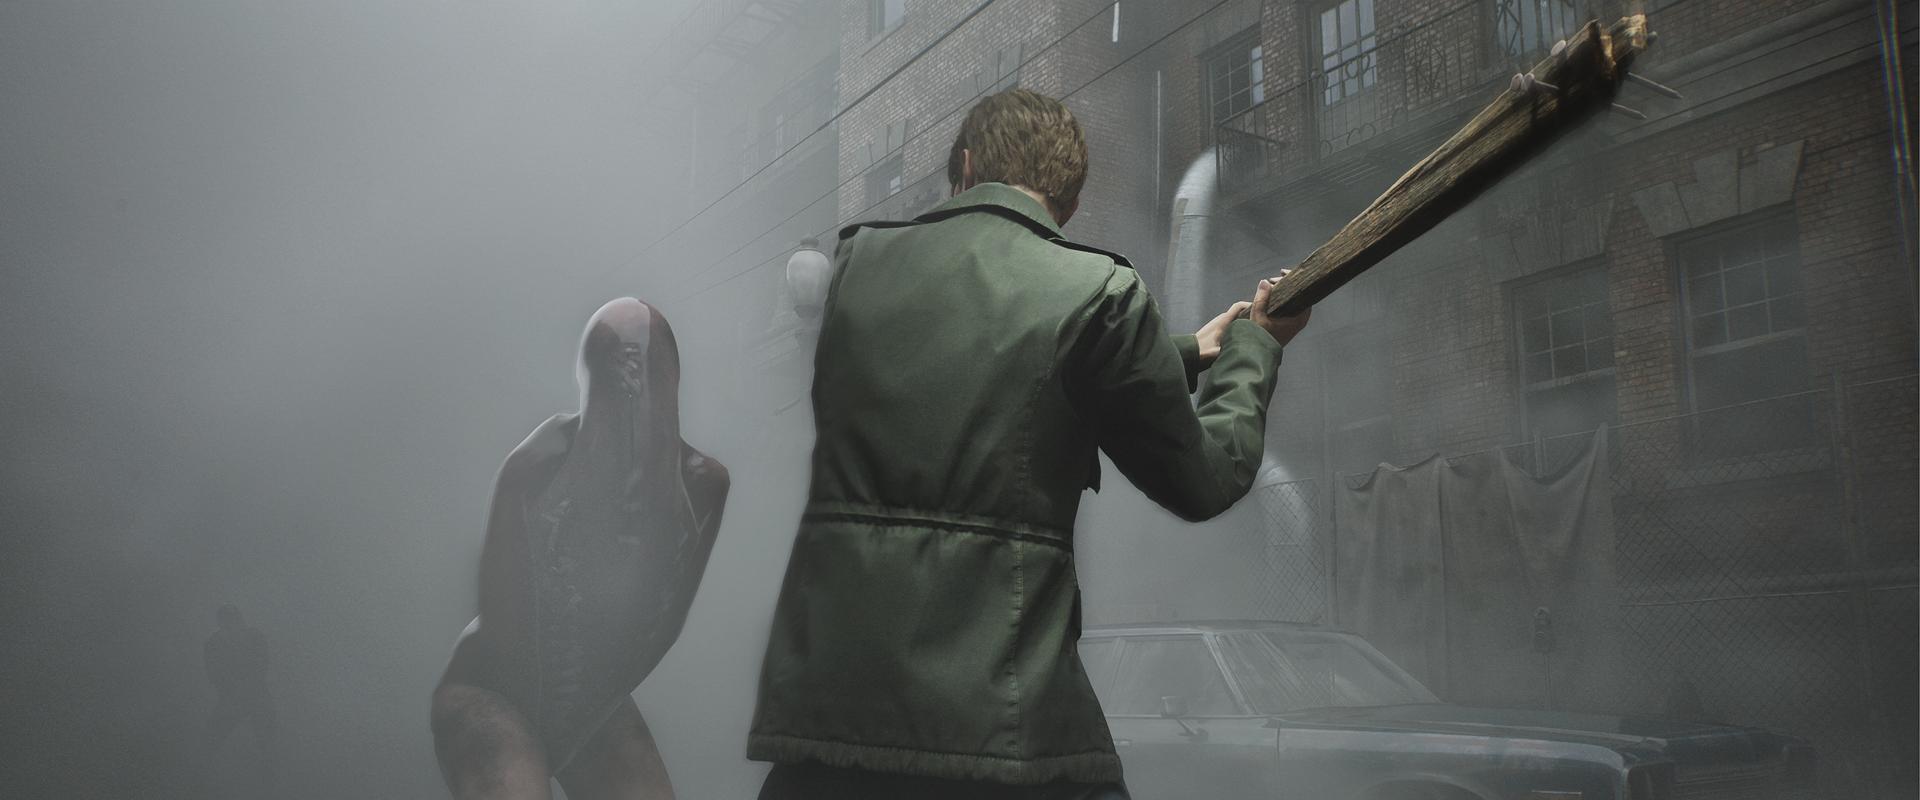 Egy reklám buktatta le, hogy mikor számíthatunk a Silent Hill 2 remakere